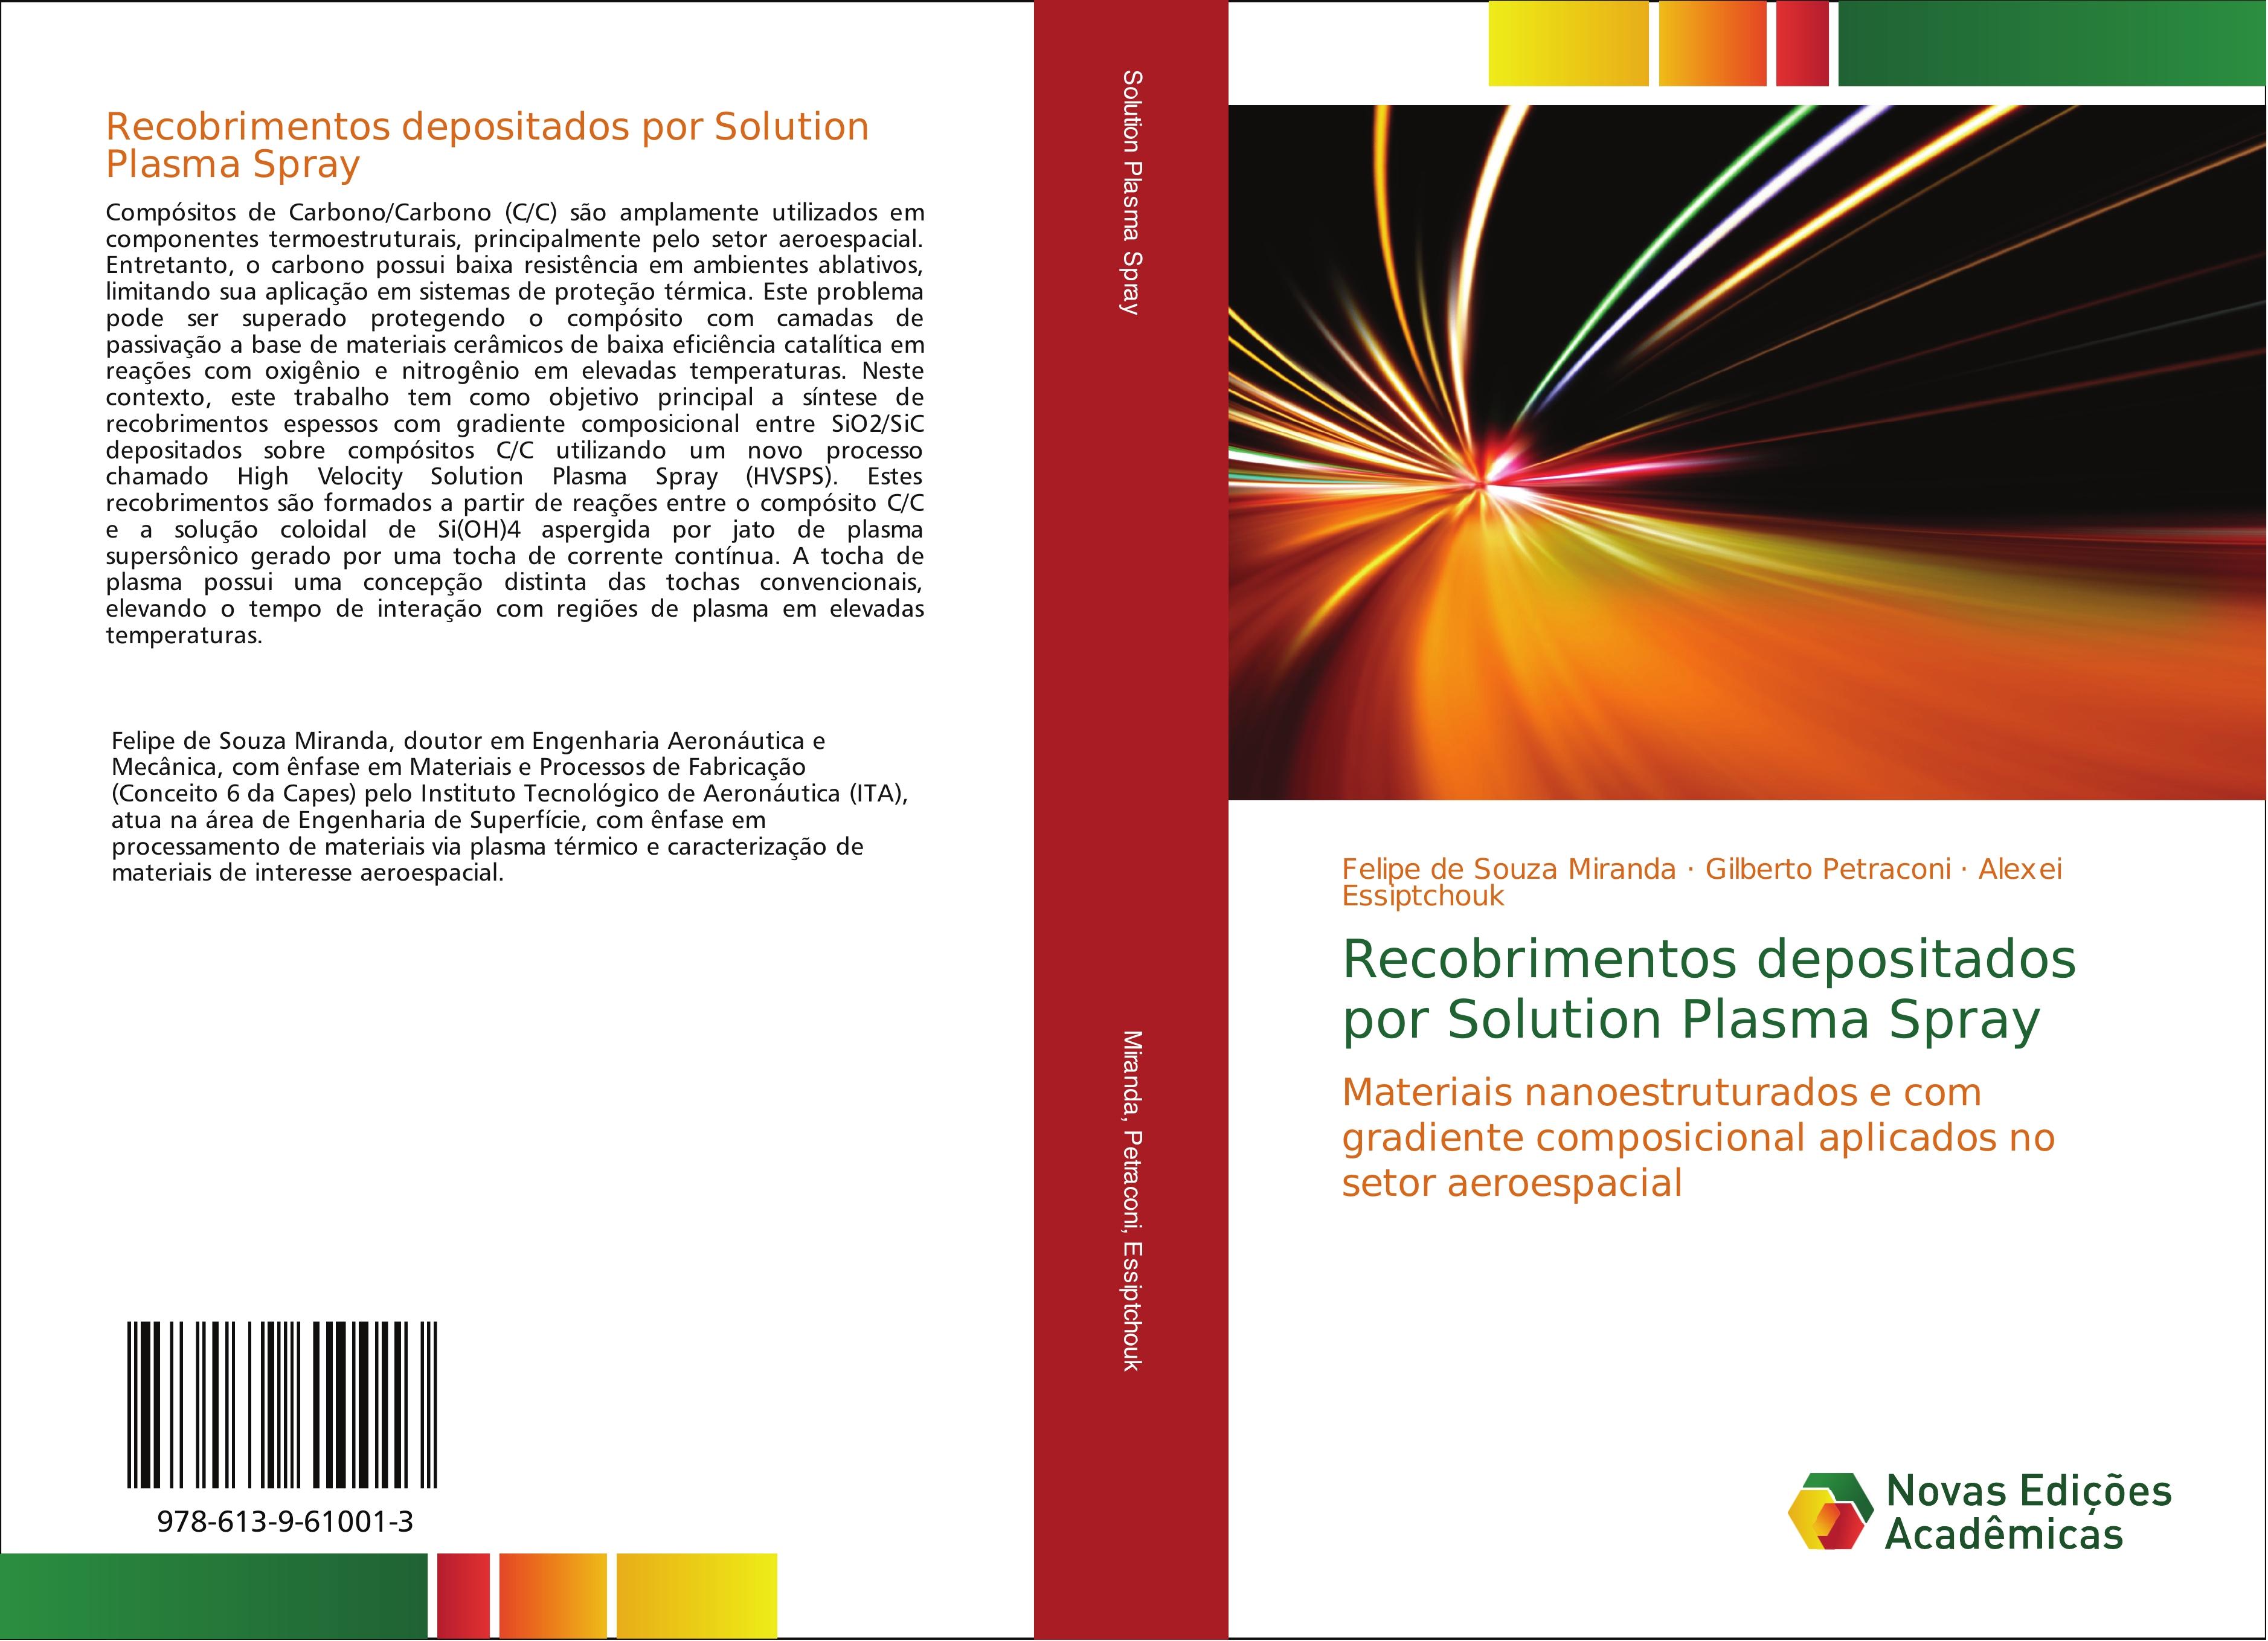 Recobrimentos depositados por Solution Plasma Spray - Felipe  de Souza Miranda Gilberto Petraconi Alexei Essiptchouk